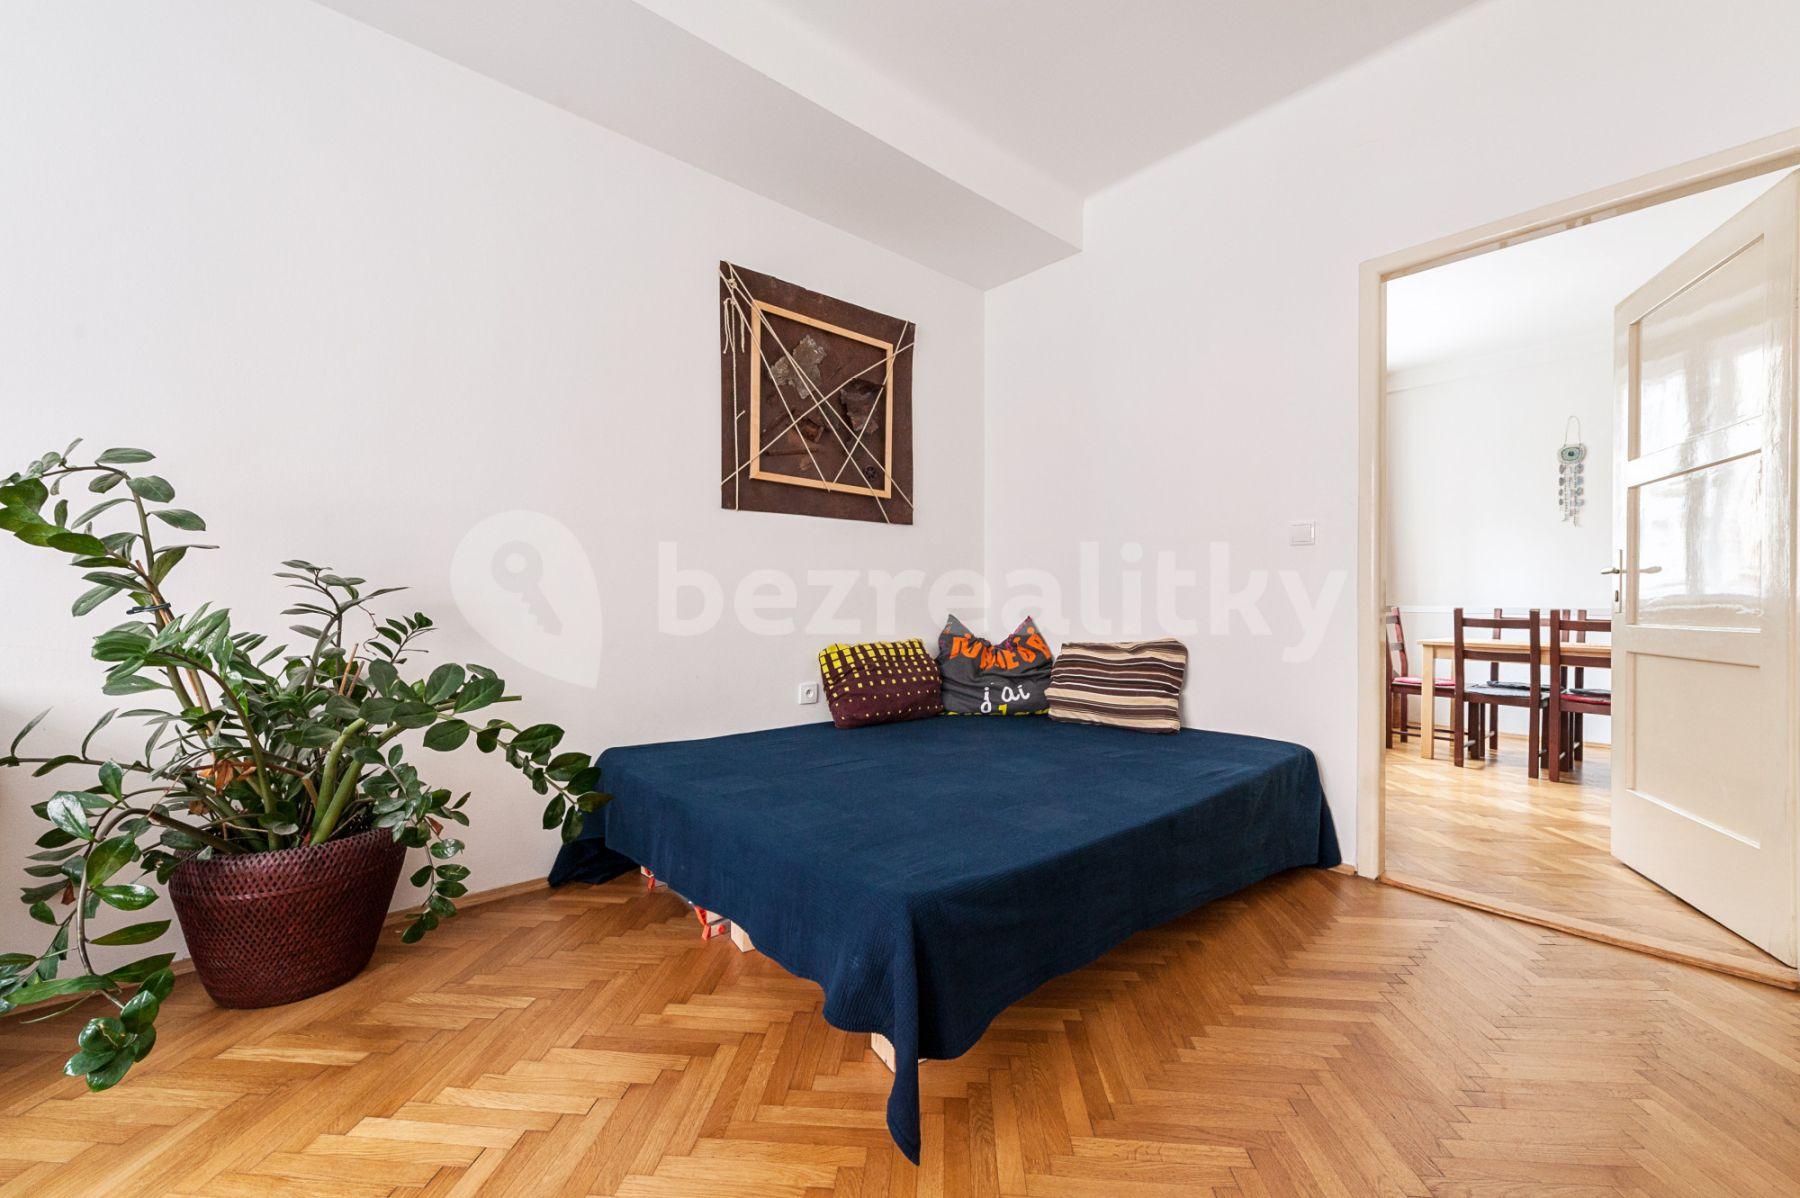 3 bedroom flat to rent, 86 m², Vrázova, Prague, Prague